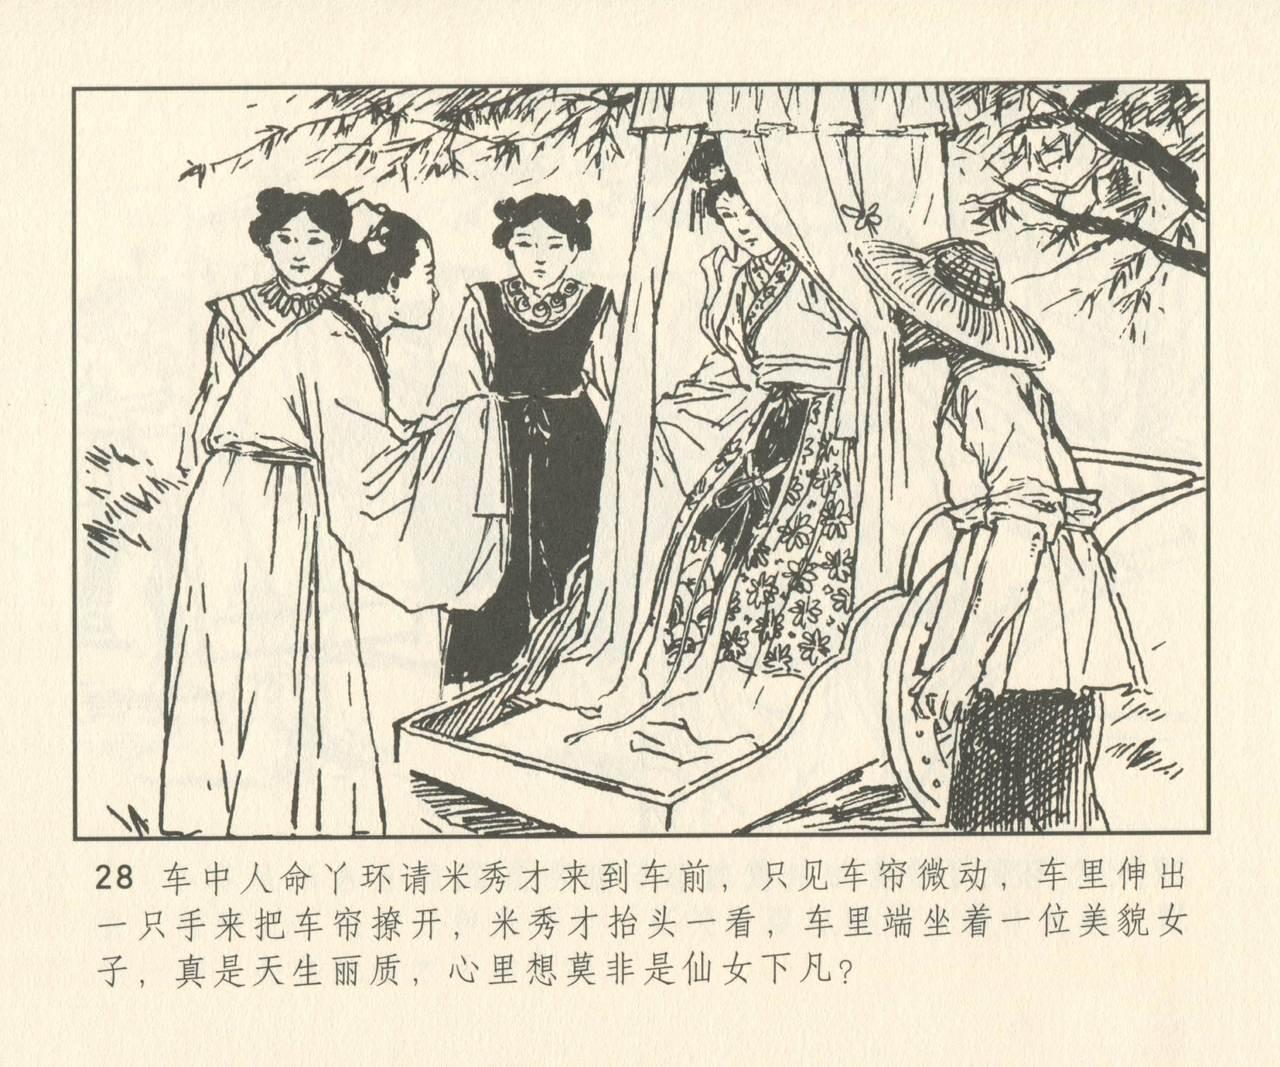 聊斋志异 张玮等绘 天津人民美术出版社 卷二十一 ~ 三十 156